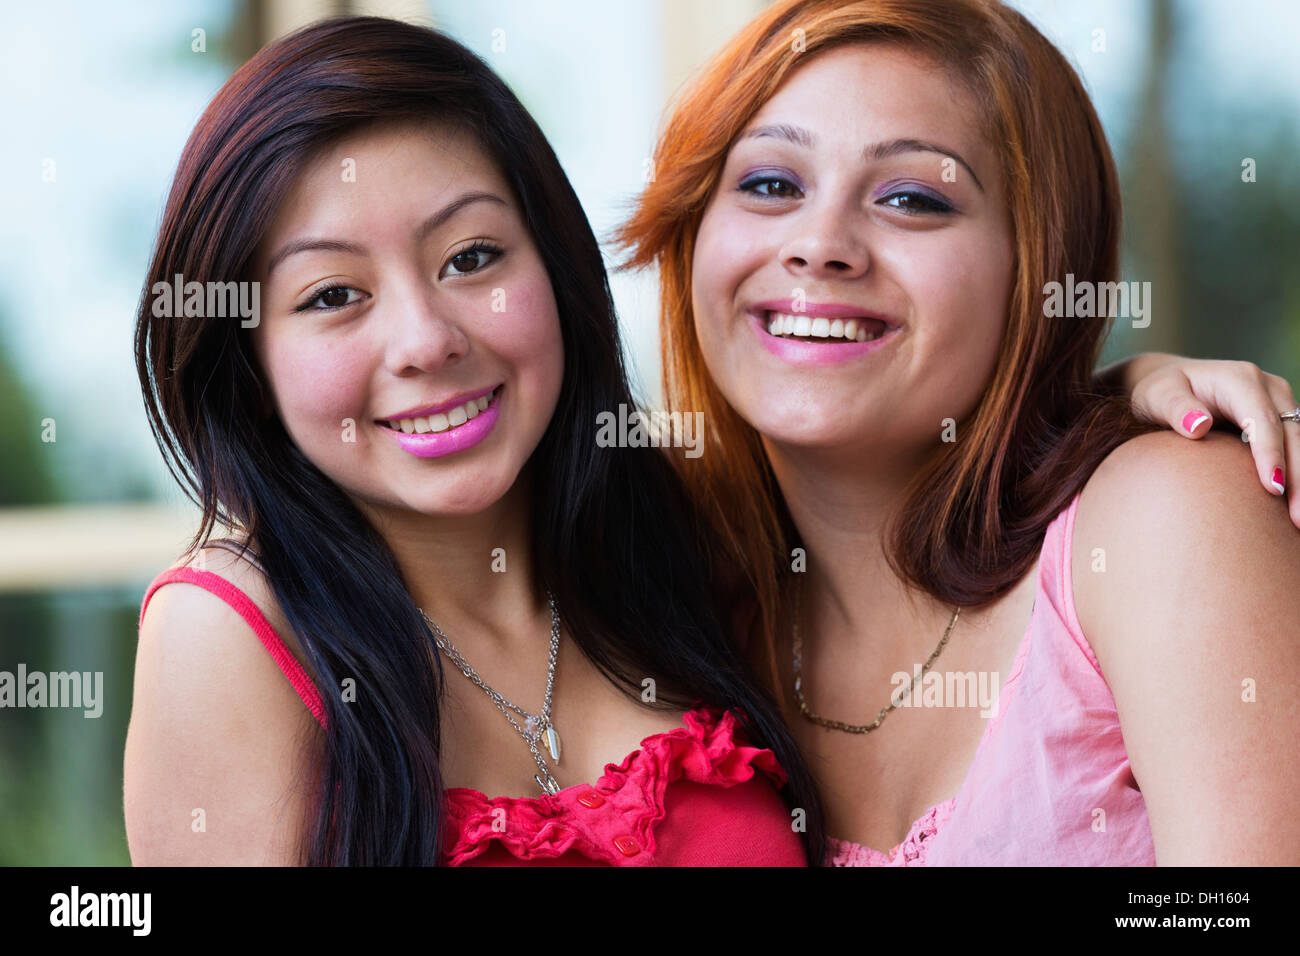 Hispanic chicas sonrientes en el exterior Foto de stock